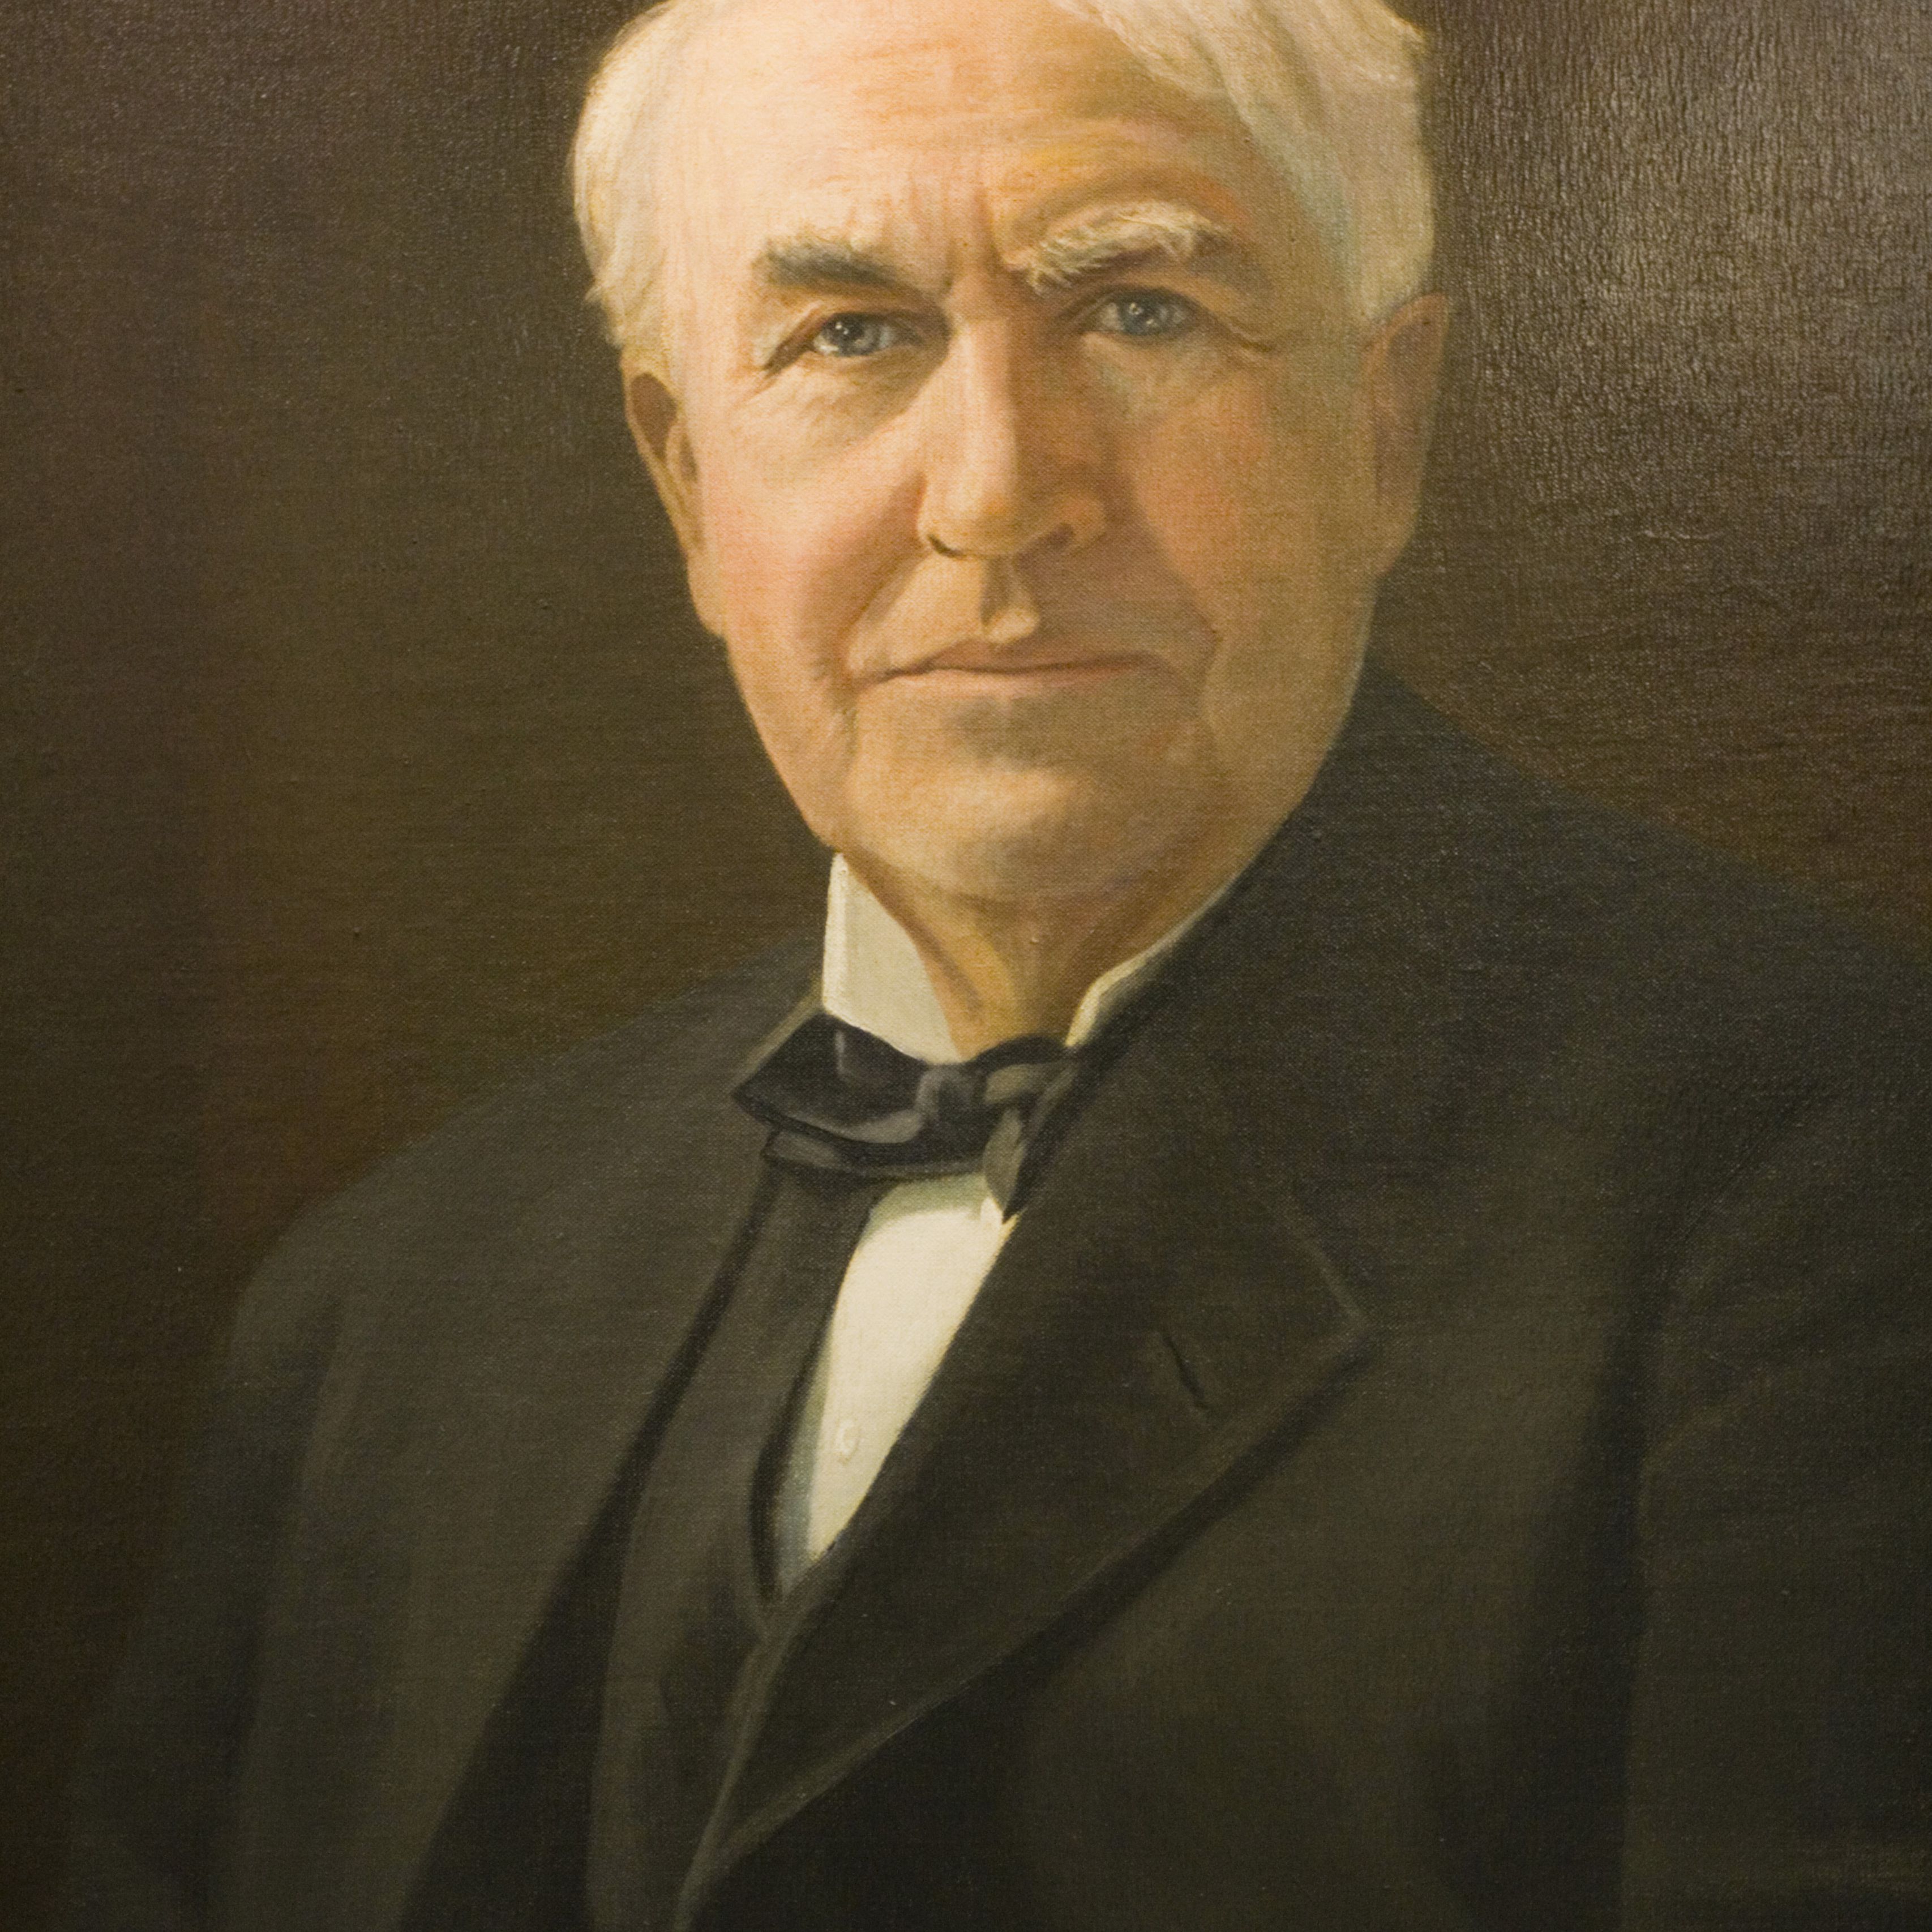 A portrait of Thomas Alba Edison wearing a black suit